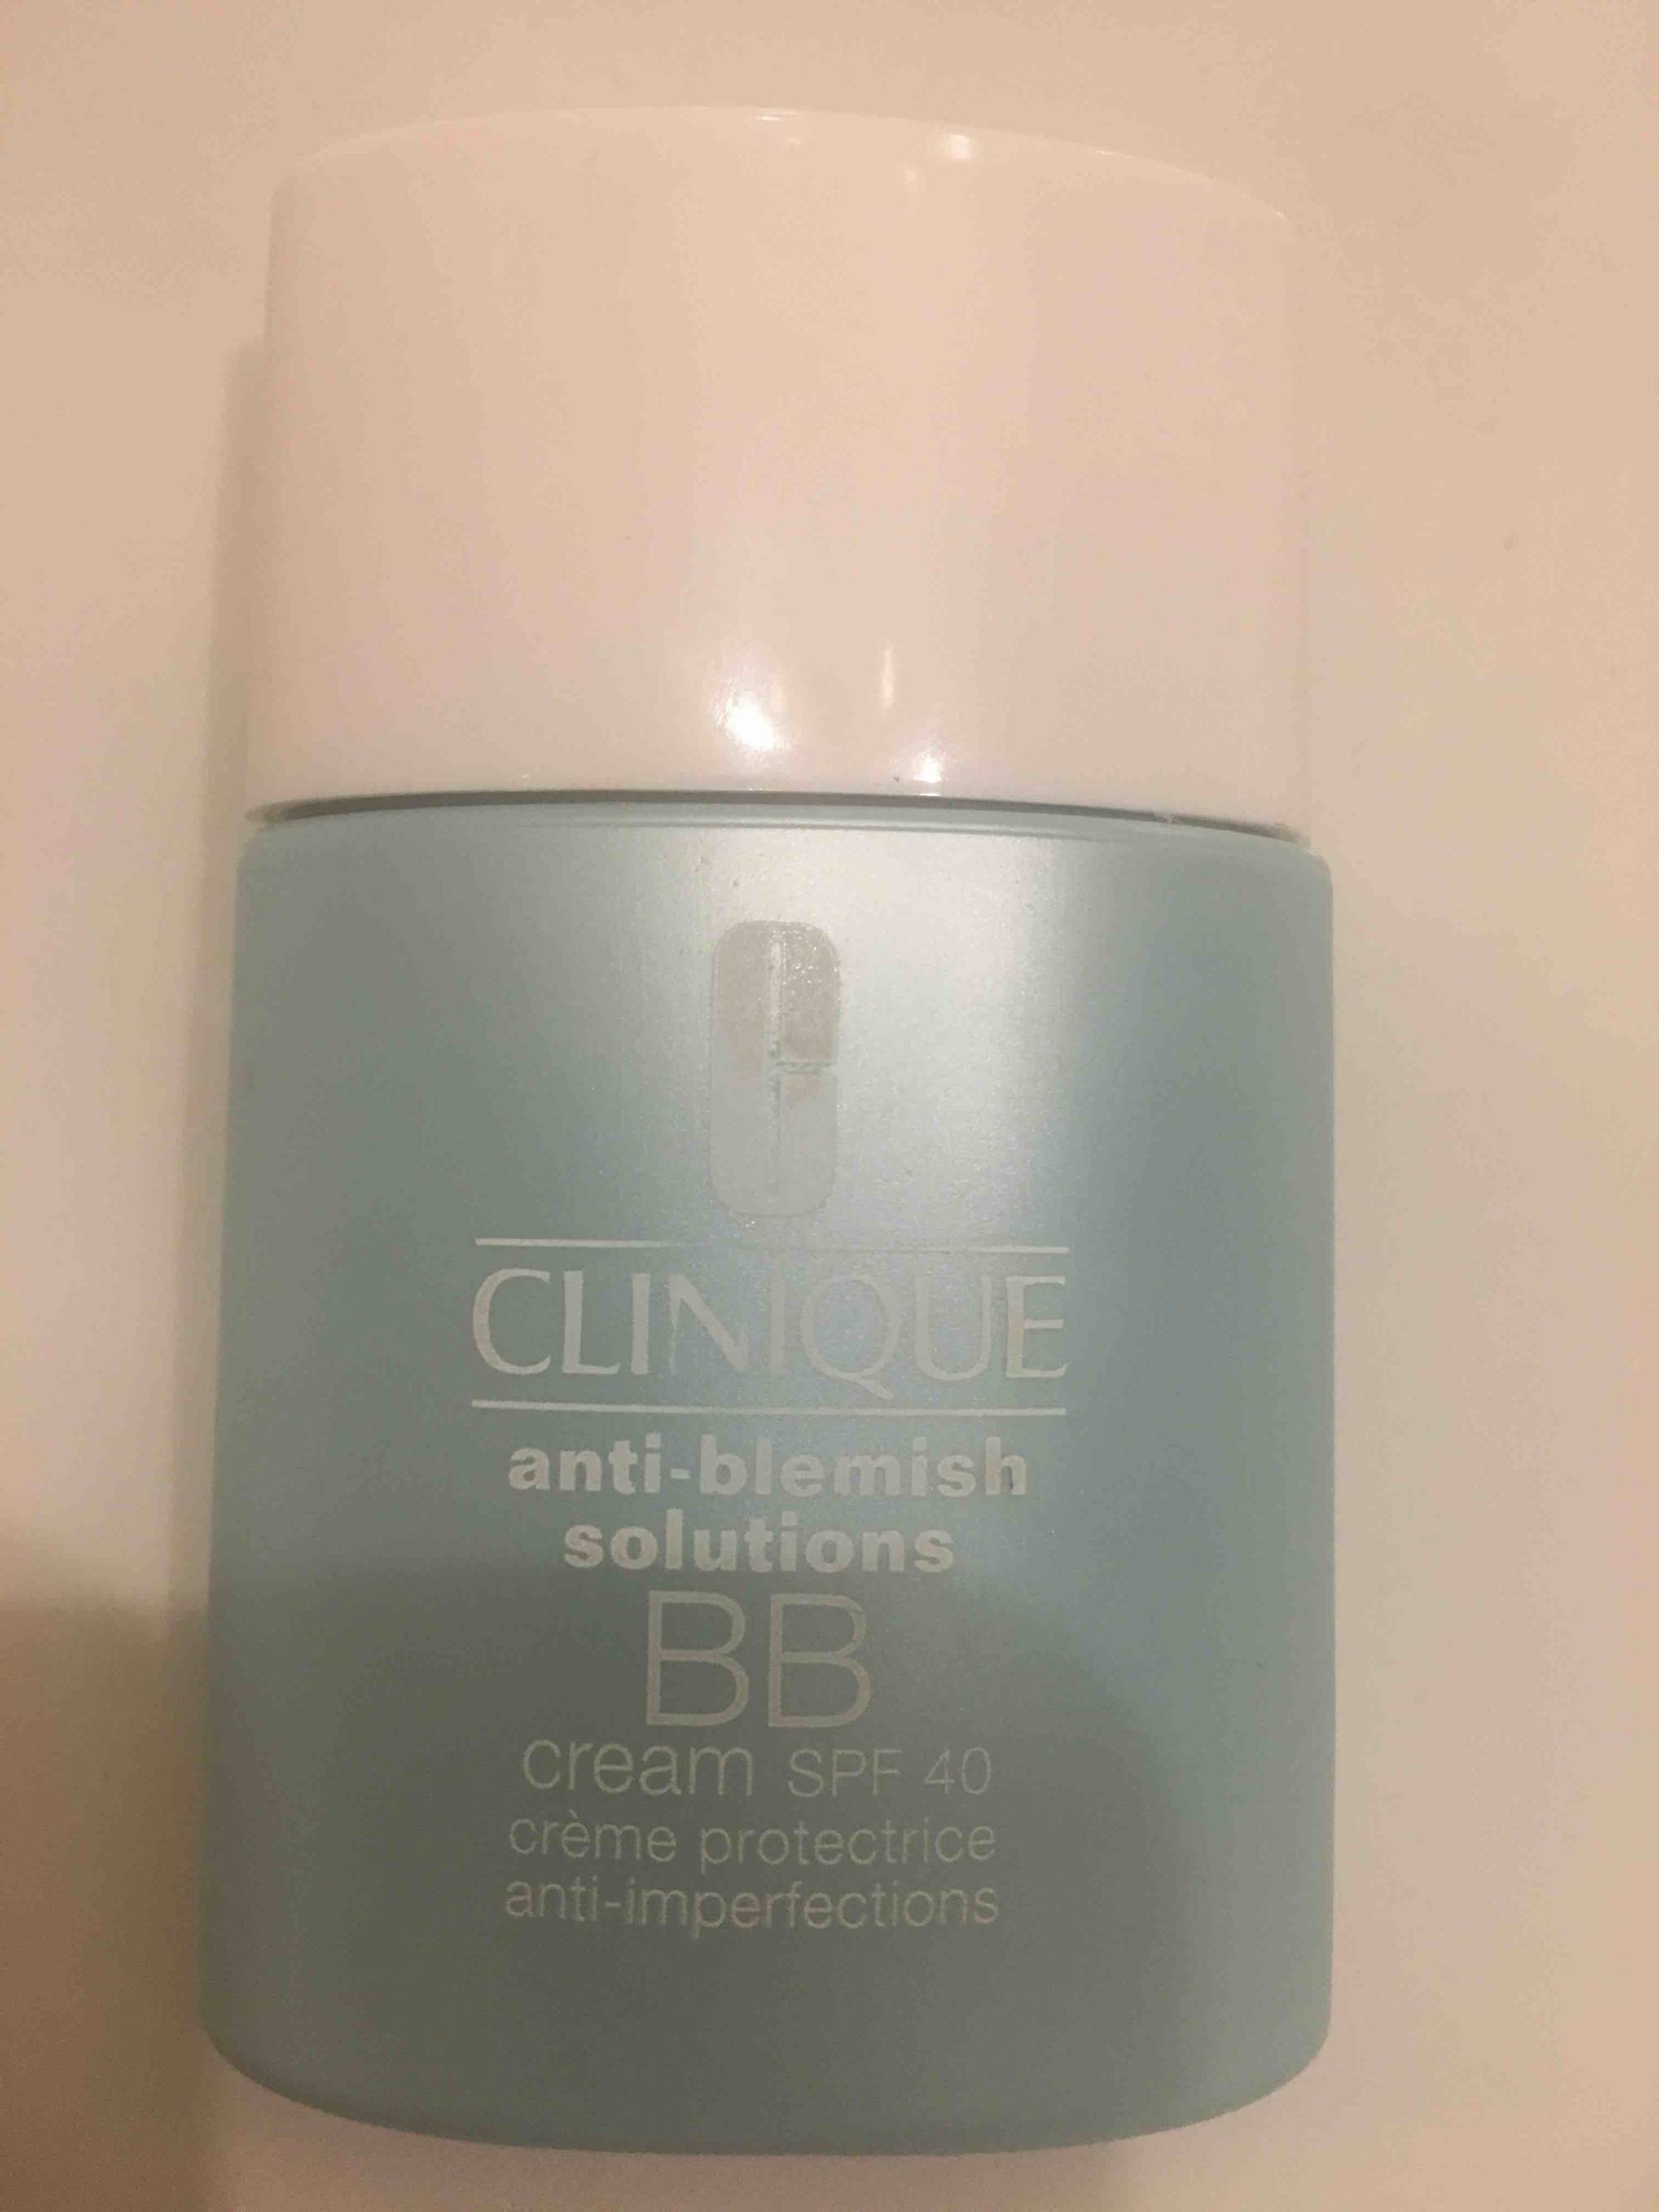 CLINIQUE - Anti-blemish solutions - BB cream SPF 40